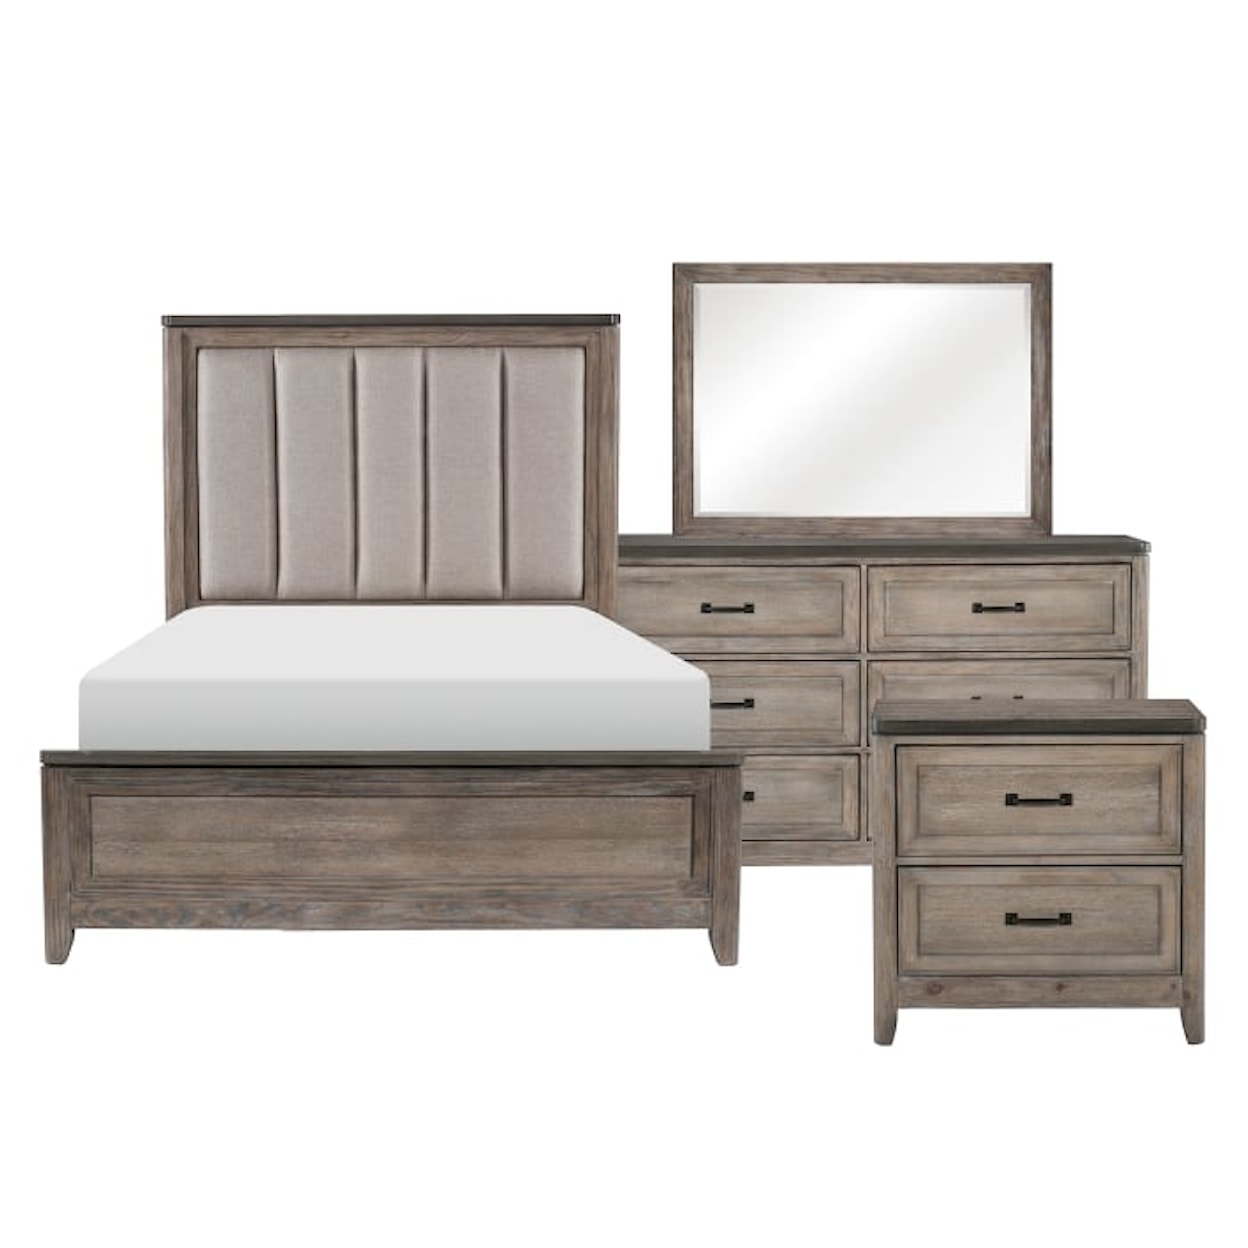 Homelegance Furniture Newell Queen Bedroom Set